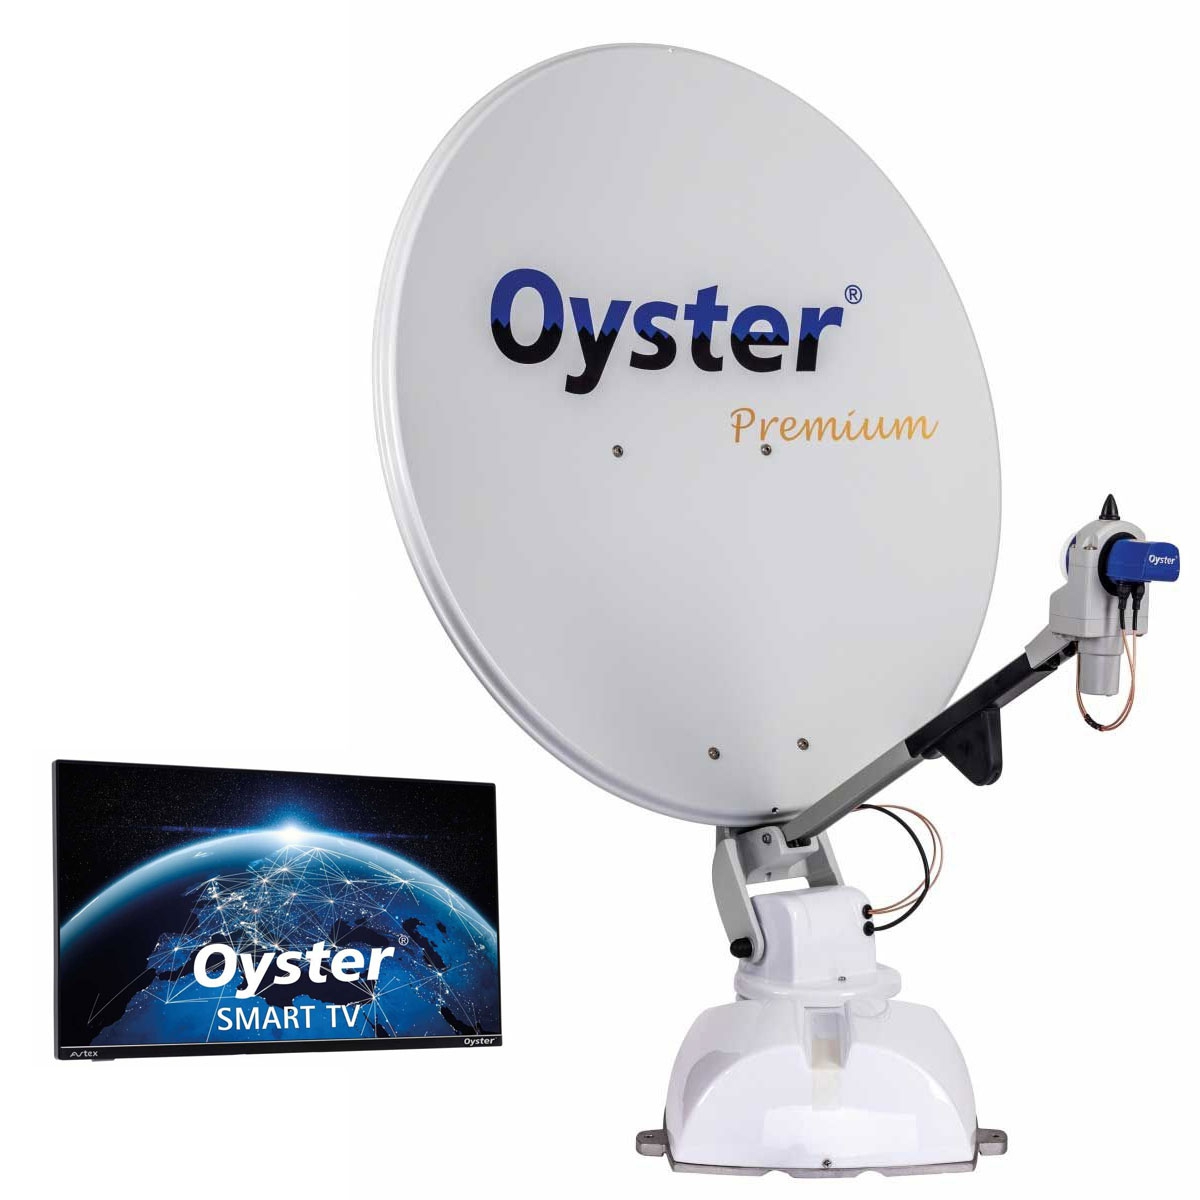 TEN HAAFT Oyster 85 Premium 19 Smart TV - 89025 - 88379